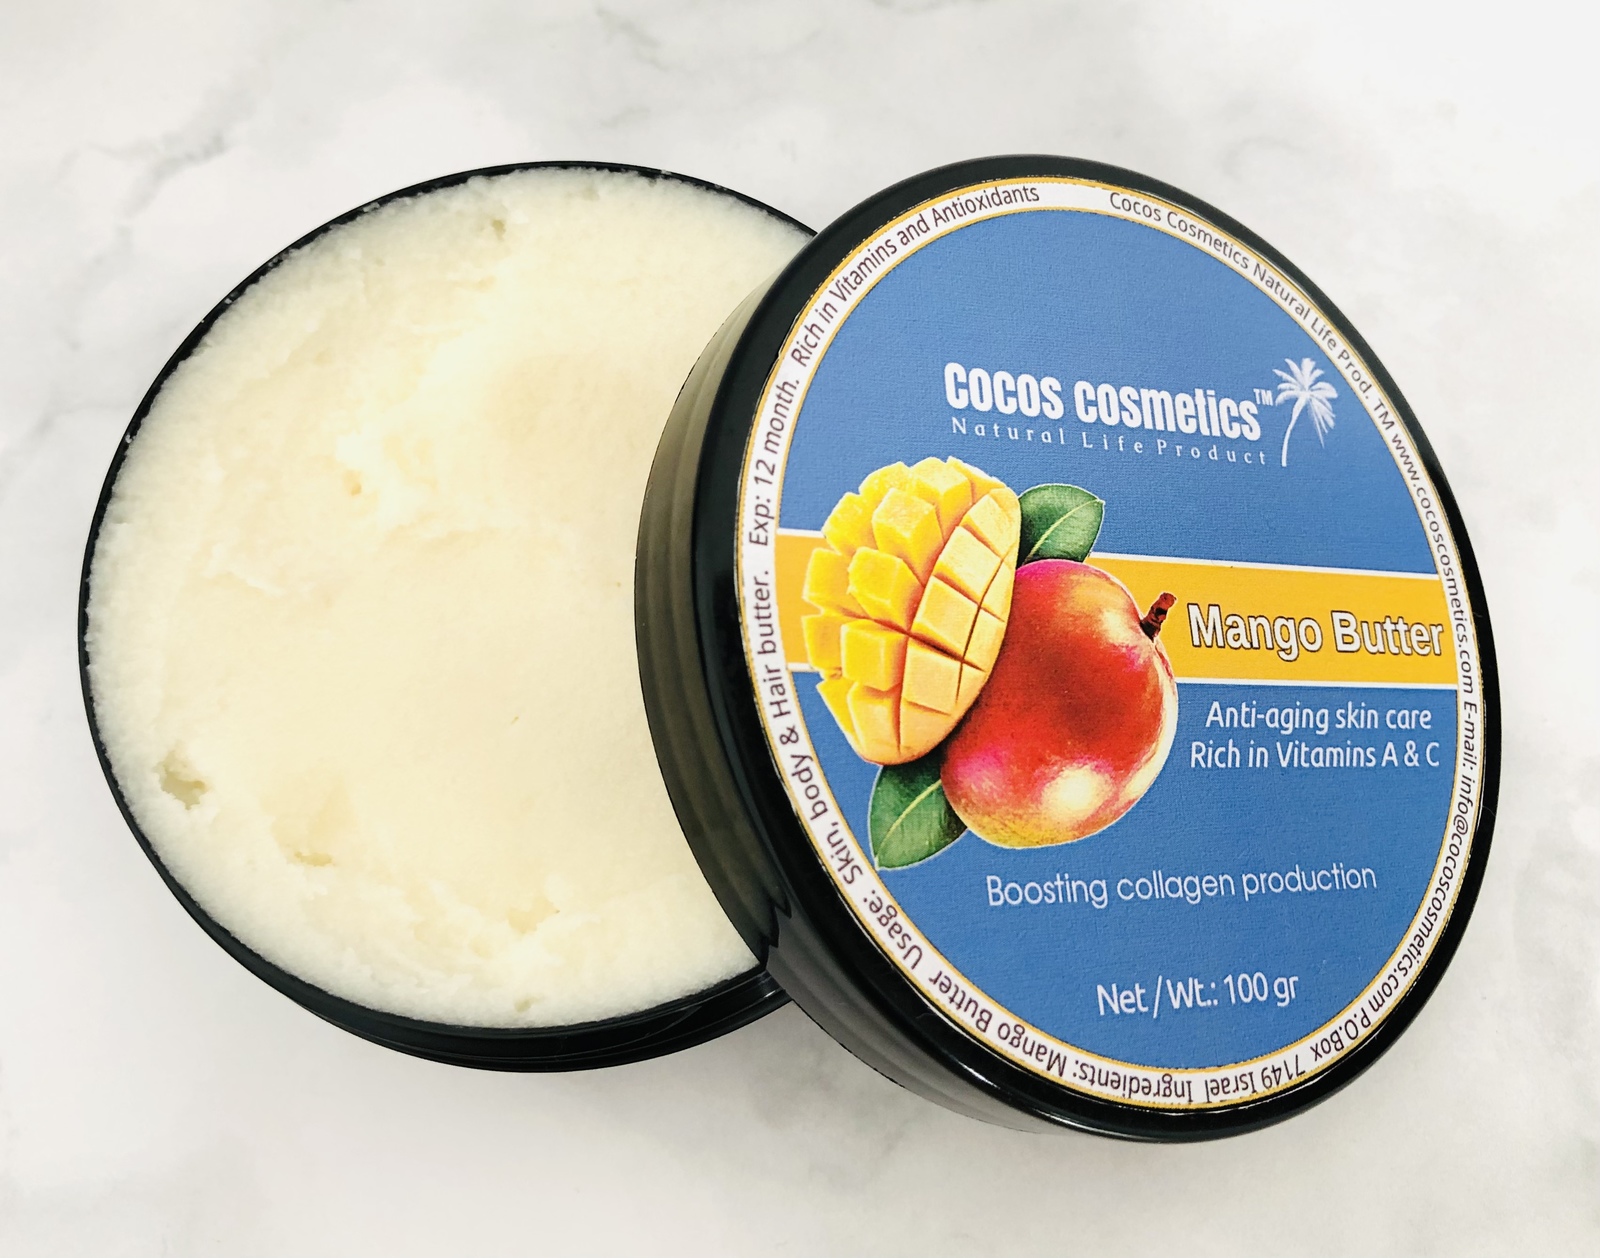 Mango butter | Mango body butter | Anti cellulite anti stretch marks butter  - $16.00